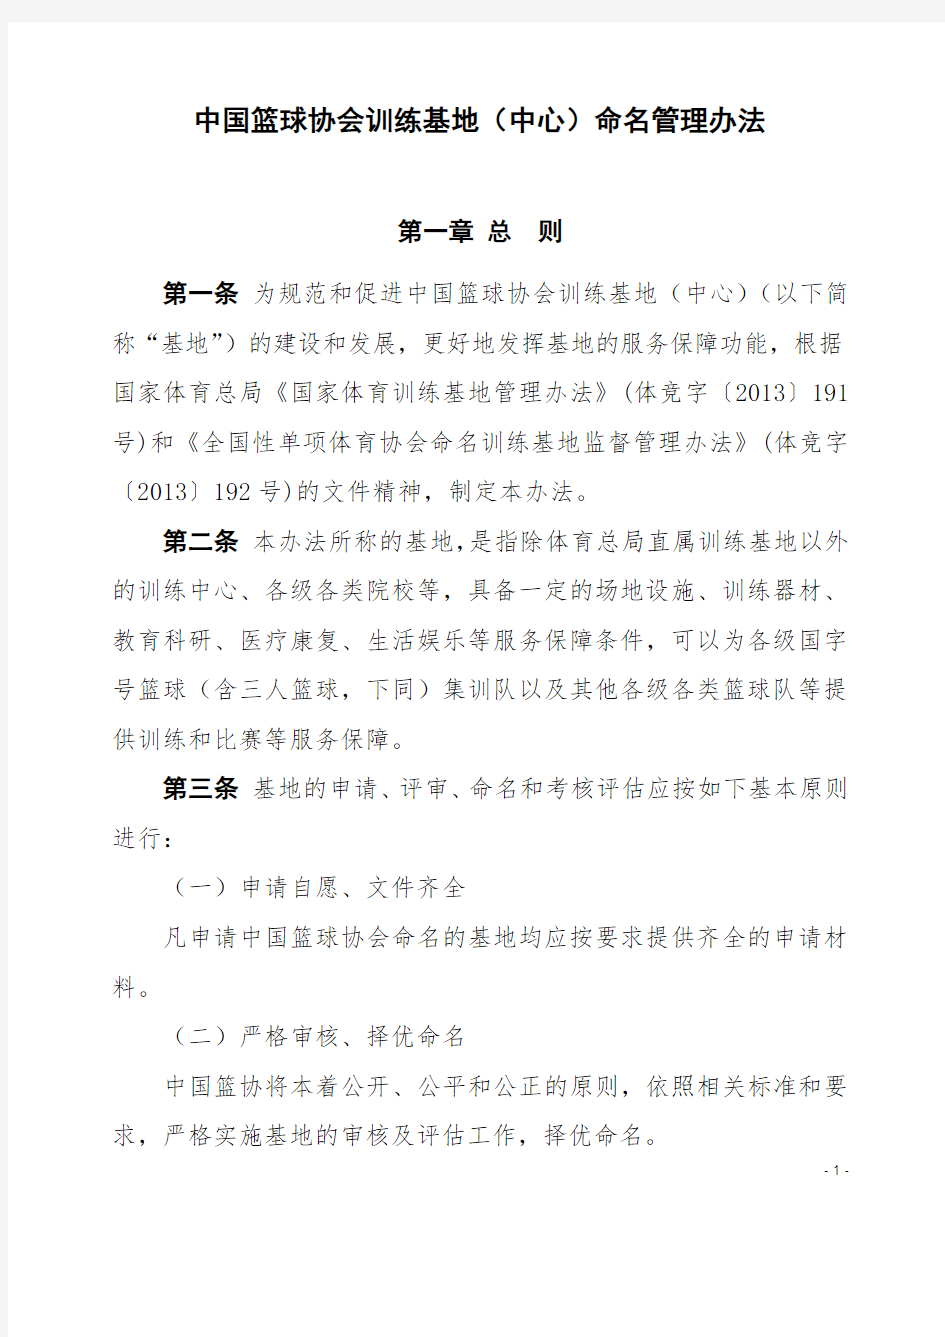 中国篮球协会训练基地(中心)命名管理办法